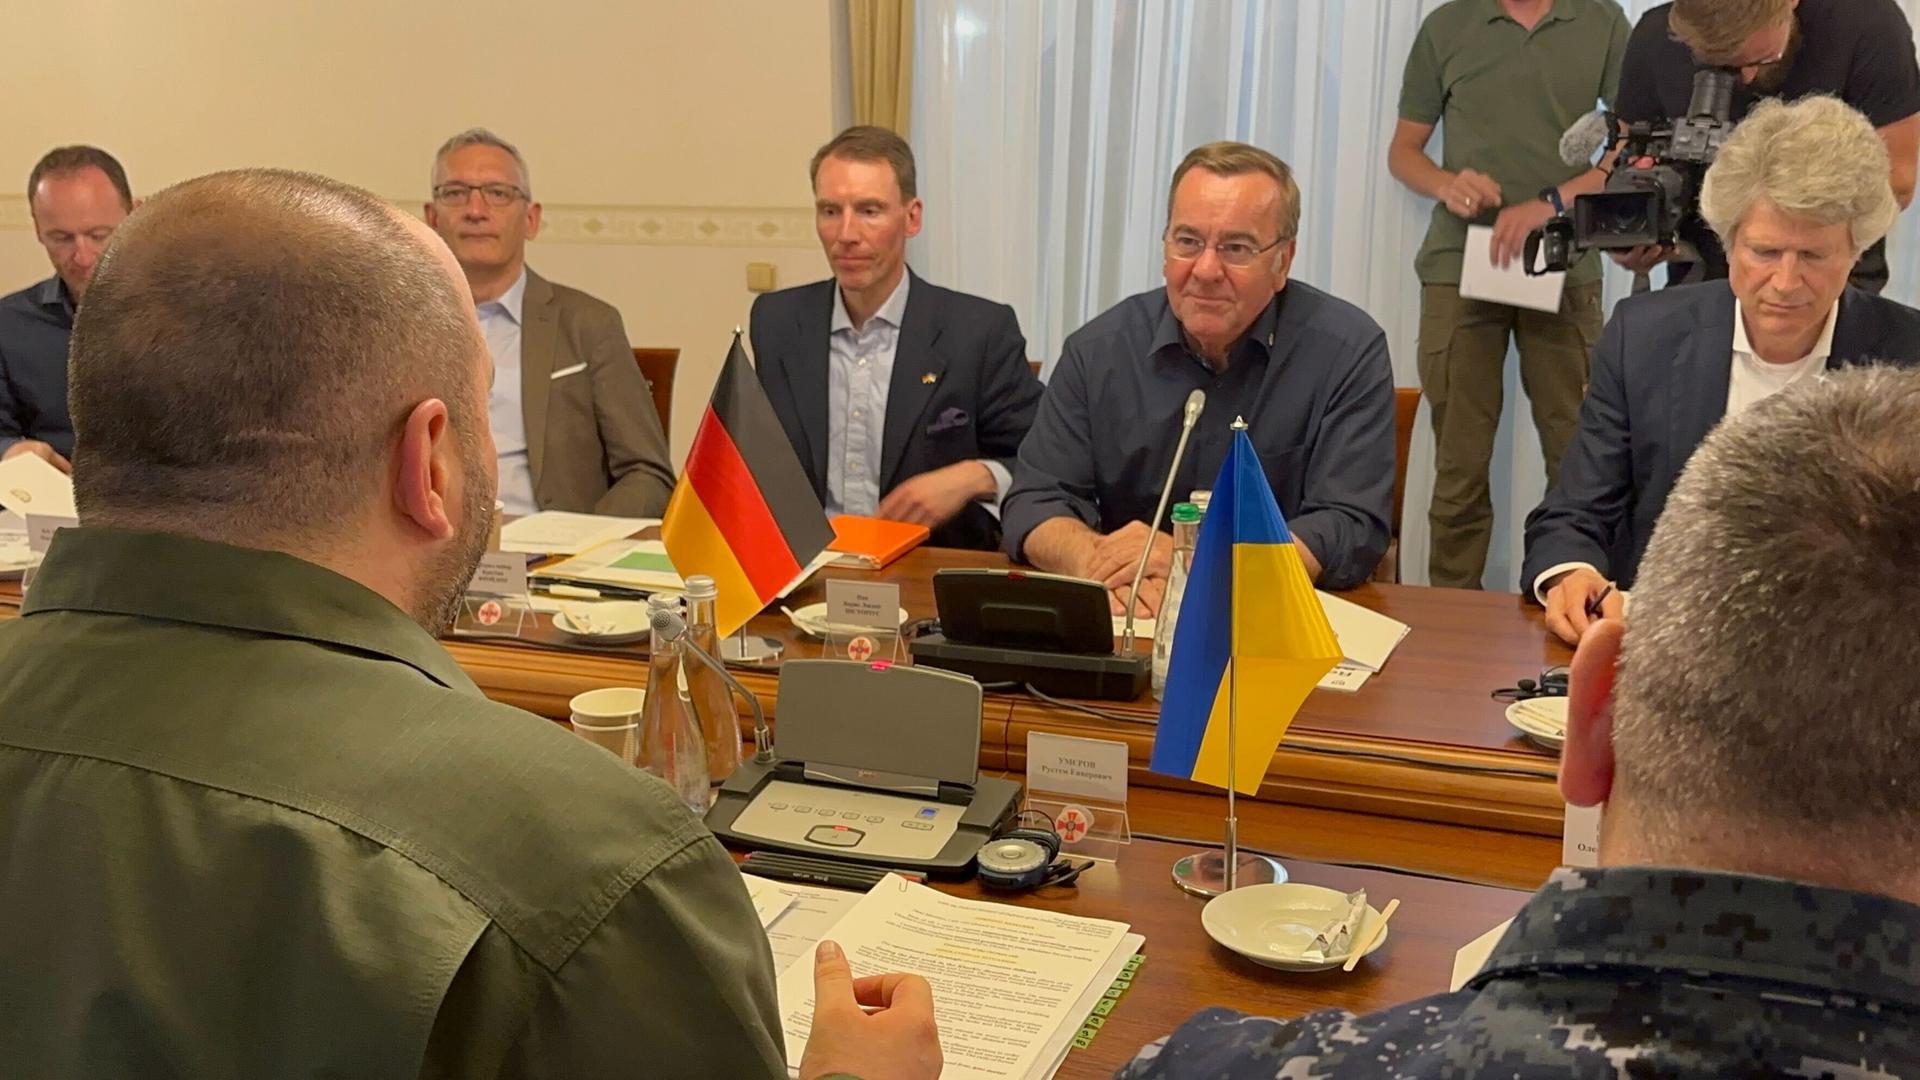 Verteidigungsminister Boris Pistorius (SPD,hinten 2.v.r) trifft sich mit seinem ukrainischen Amtskollegen Rustem Umjerow (vorne links), Ukrainischer Verteidigungsminister, in Odessa. Neben ihnen sitzen weitere Delegationsmitglieder. Aufnahme vom 30.05.2024.